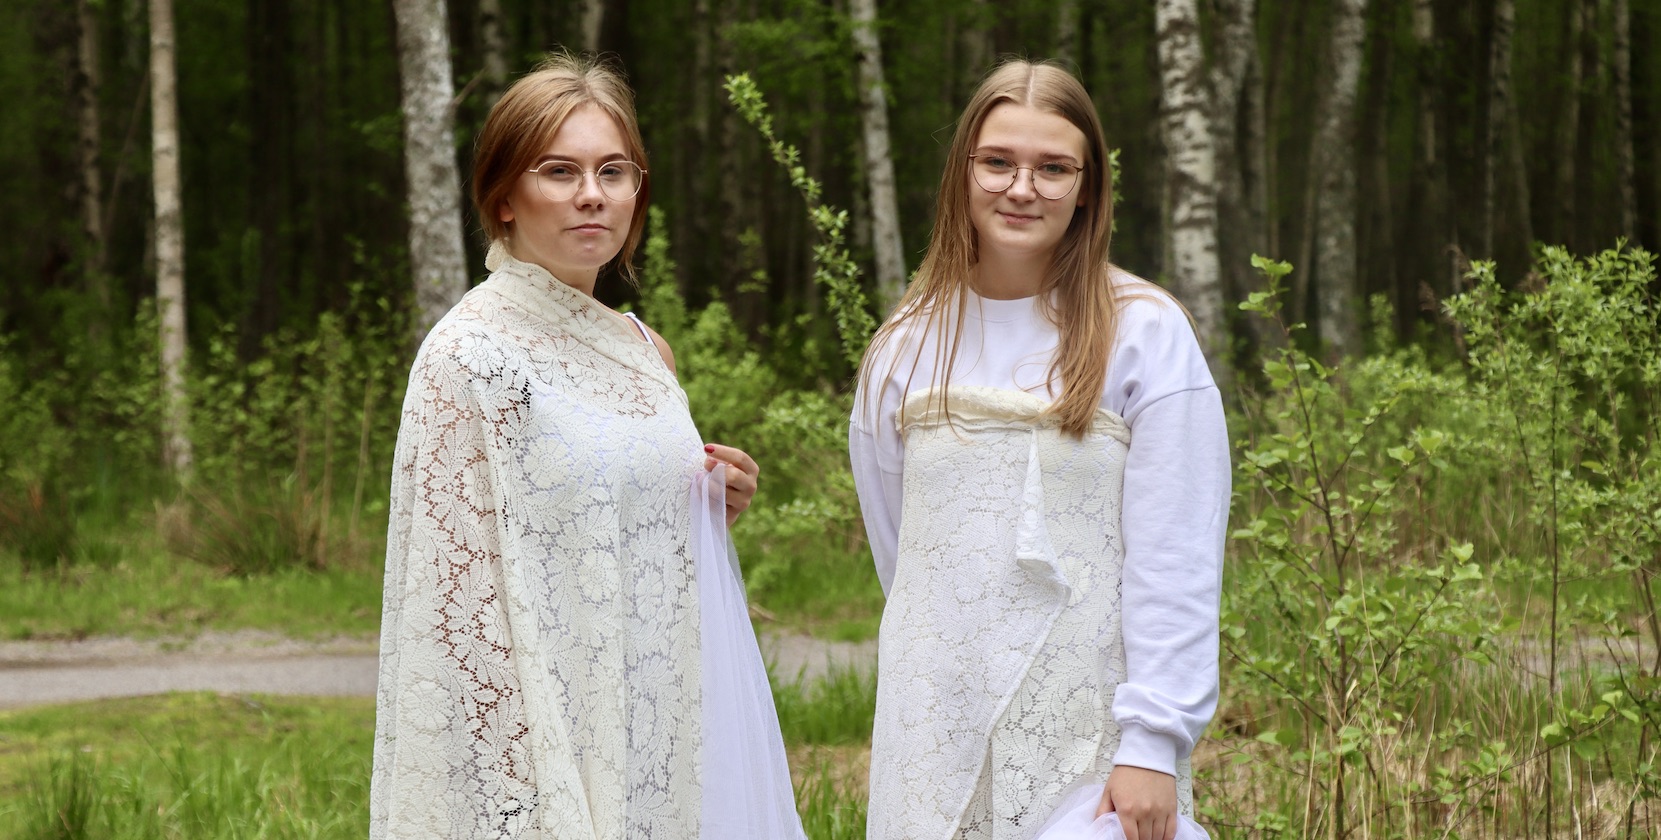 Två blonda tjejer i 18-årsåldern står på en öppen yta i skogen iklädda vita, fladdriga kläder - utklädda till älvor.